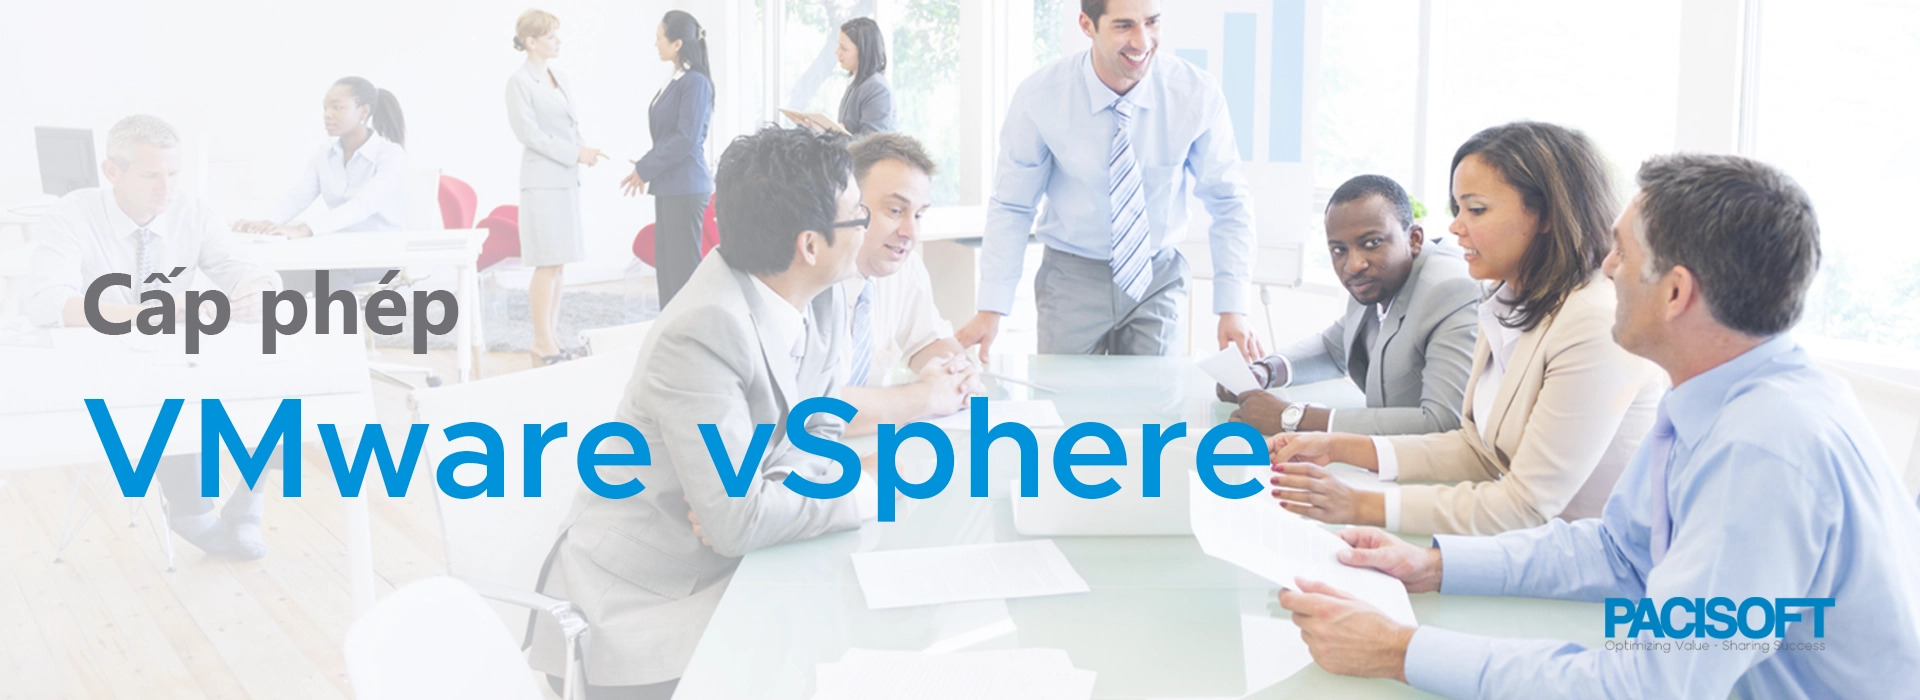 Nên mua cấp phép VMware vSphere bản quyền nào cho doanh nghiệp?